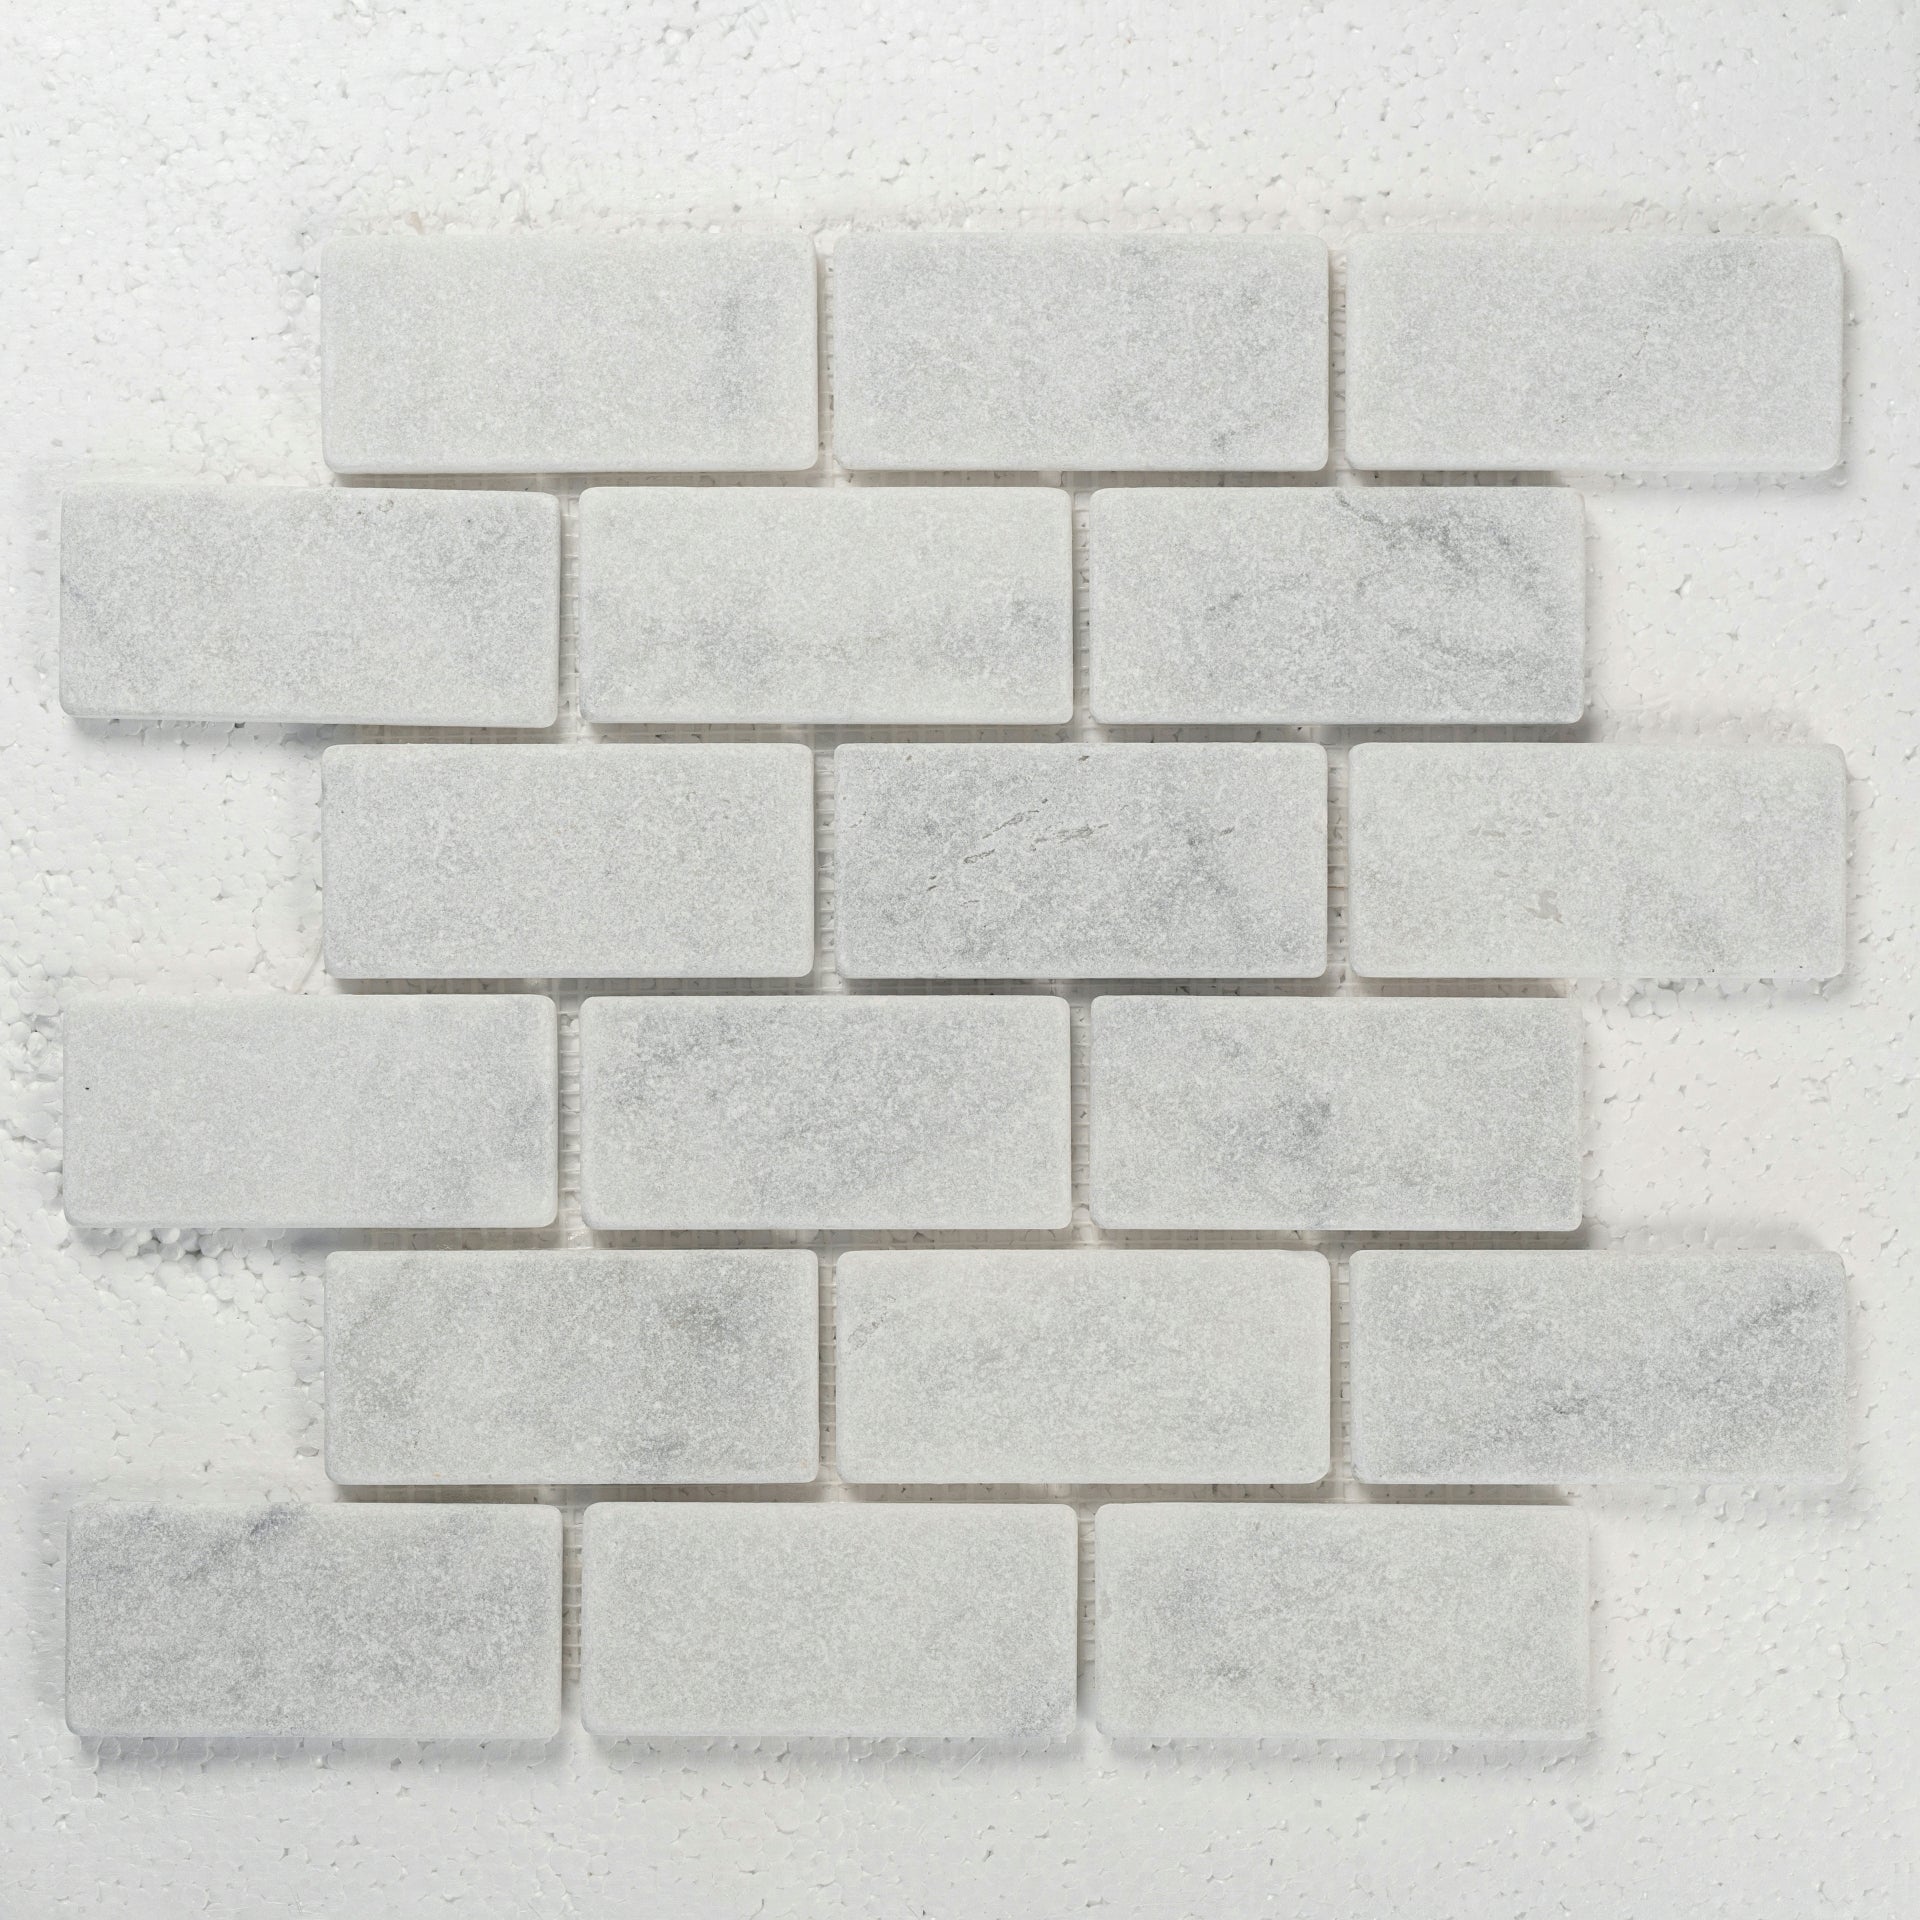 12 X 12 in. Bianco Carrara 2x4 brick White Honed Tumbled Marble Mosaic